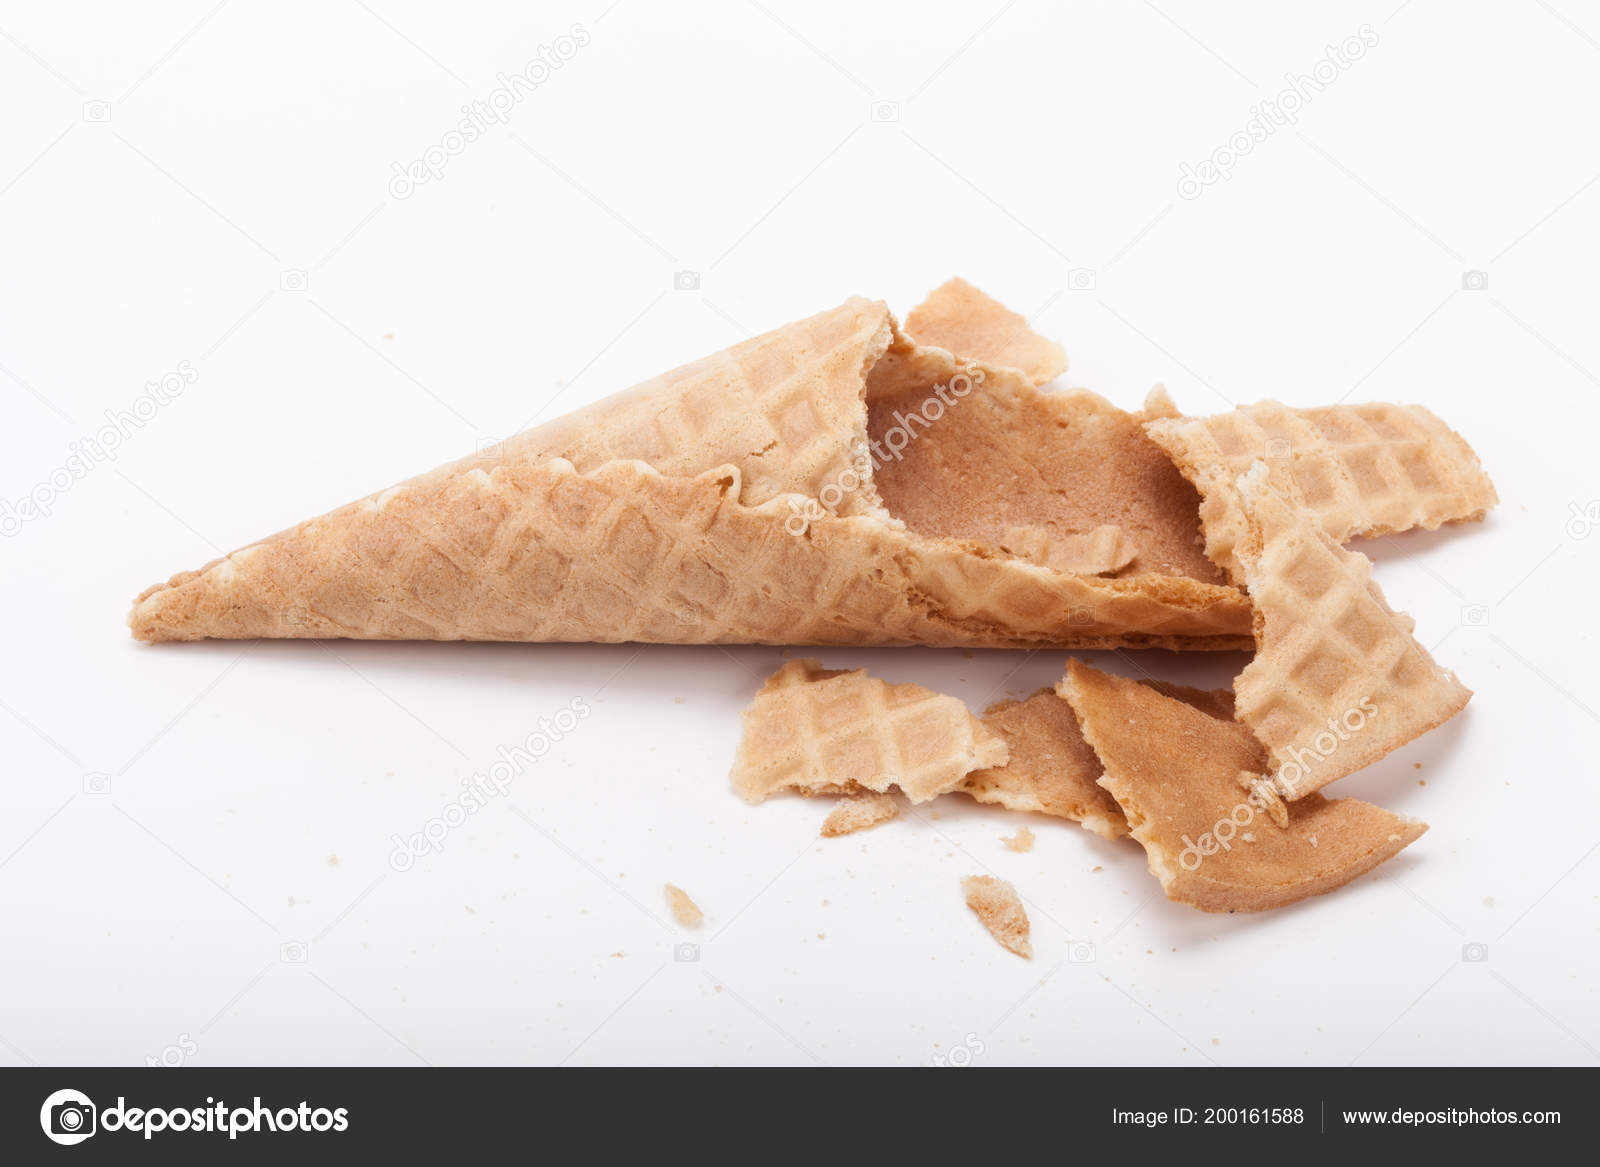 depositphotos_200161588-stock-photo-broken-empty-sugar-waffle-cones.jpg